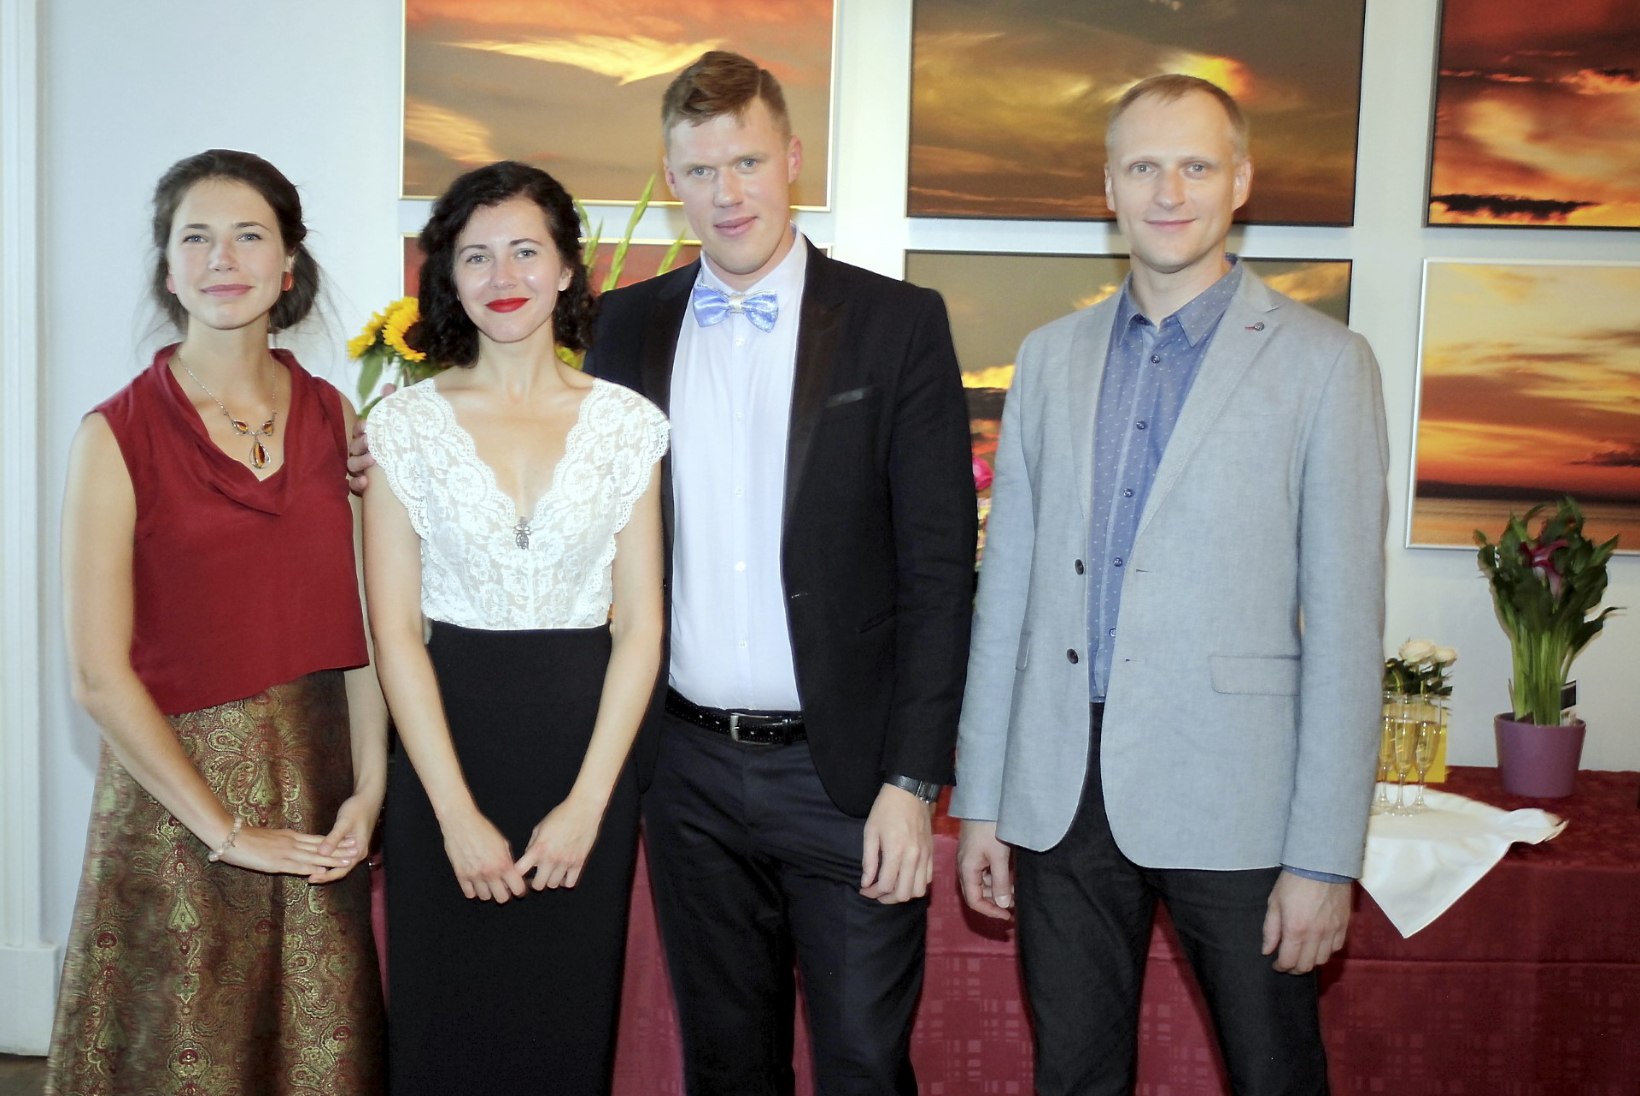 PILDID JA VIDEO | Tallinna Õpetajate Maja tähistas 60. sünnipäeva, õnnitlema tuli ka Ivan Orav